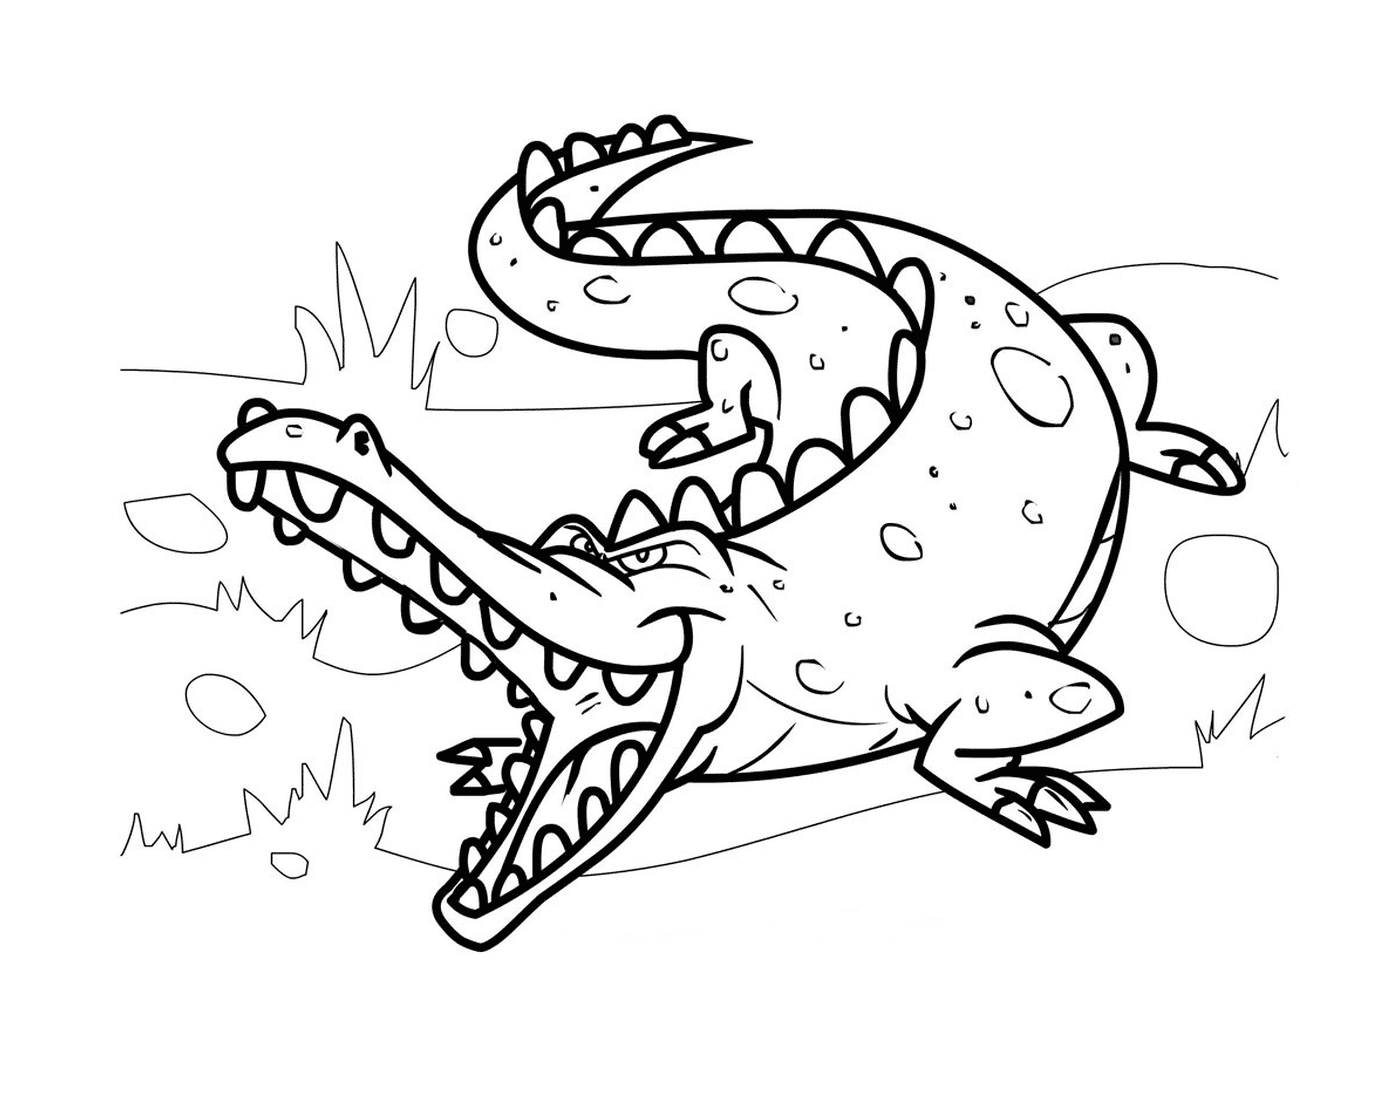  Un cocodrilo medio en su hábitat natural, en estilo de dibujos animados 